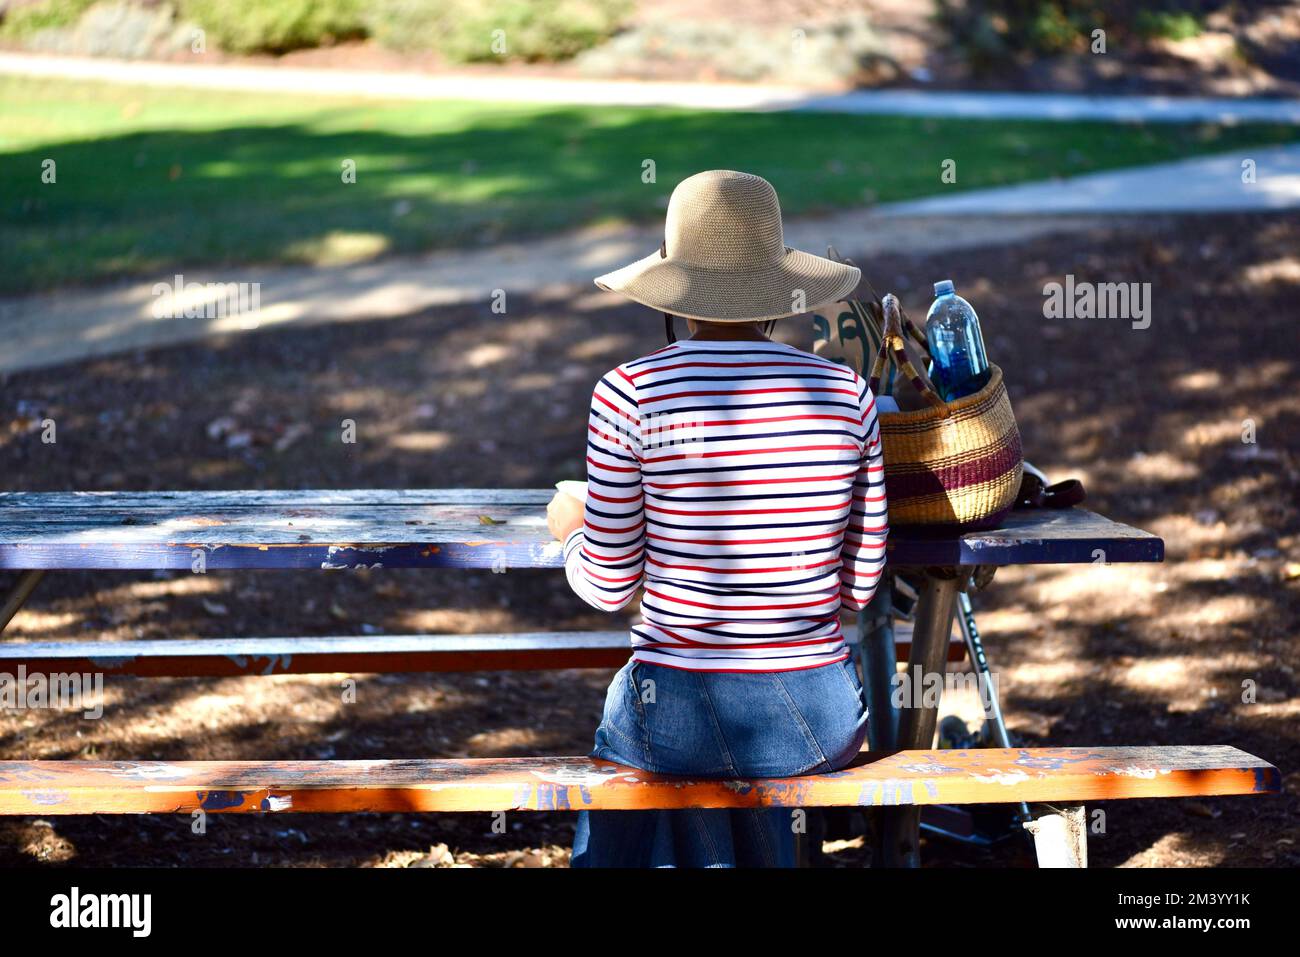 la mujer sentada en un banco del parque que lleva un sombrero floppy de fibra natural tiene un almuerzo tranquilo y silencioso en un entorno similar al parque Foto de stock